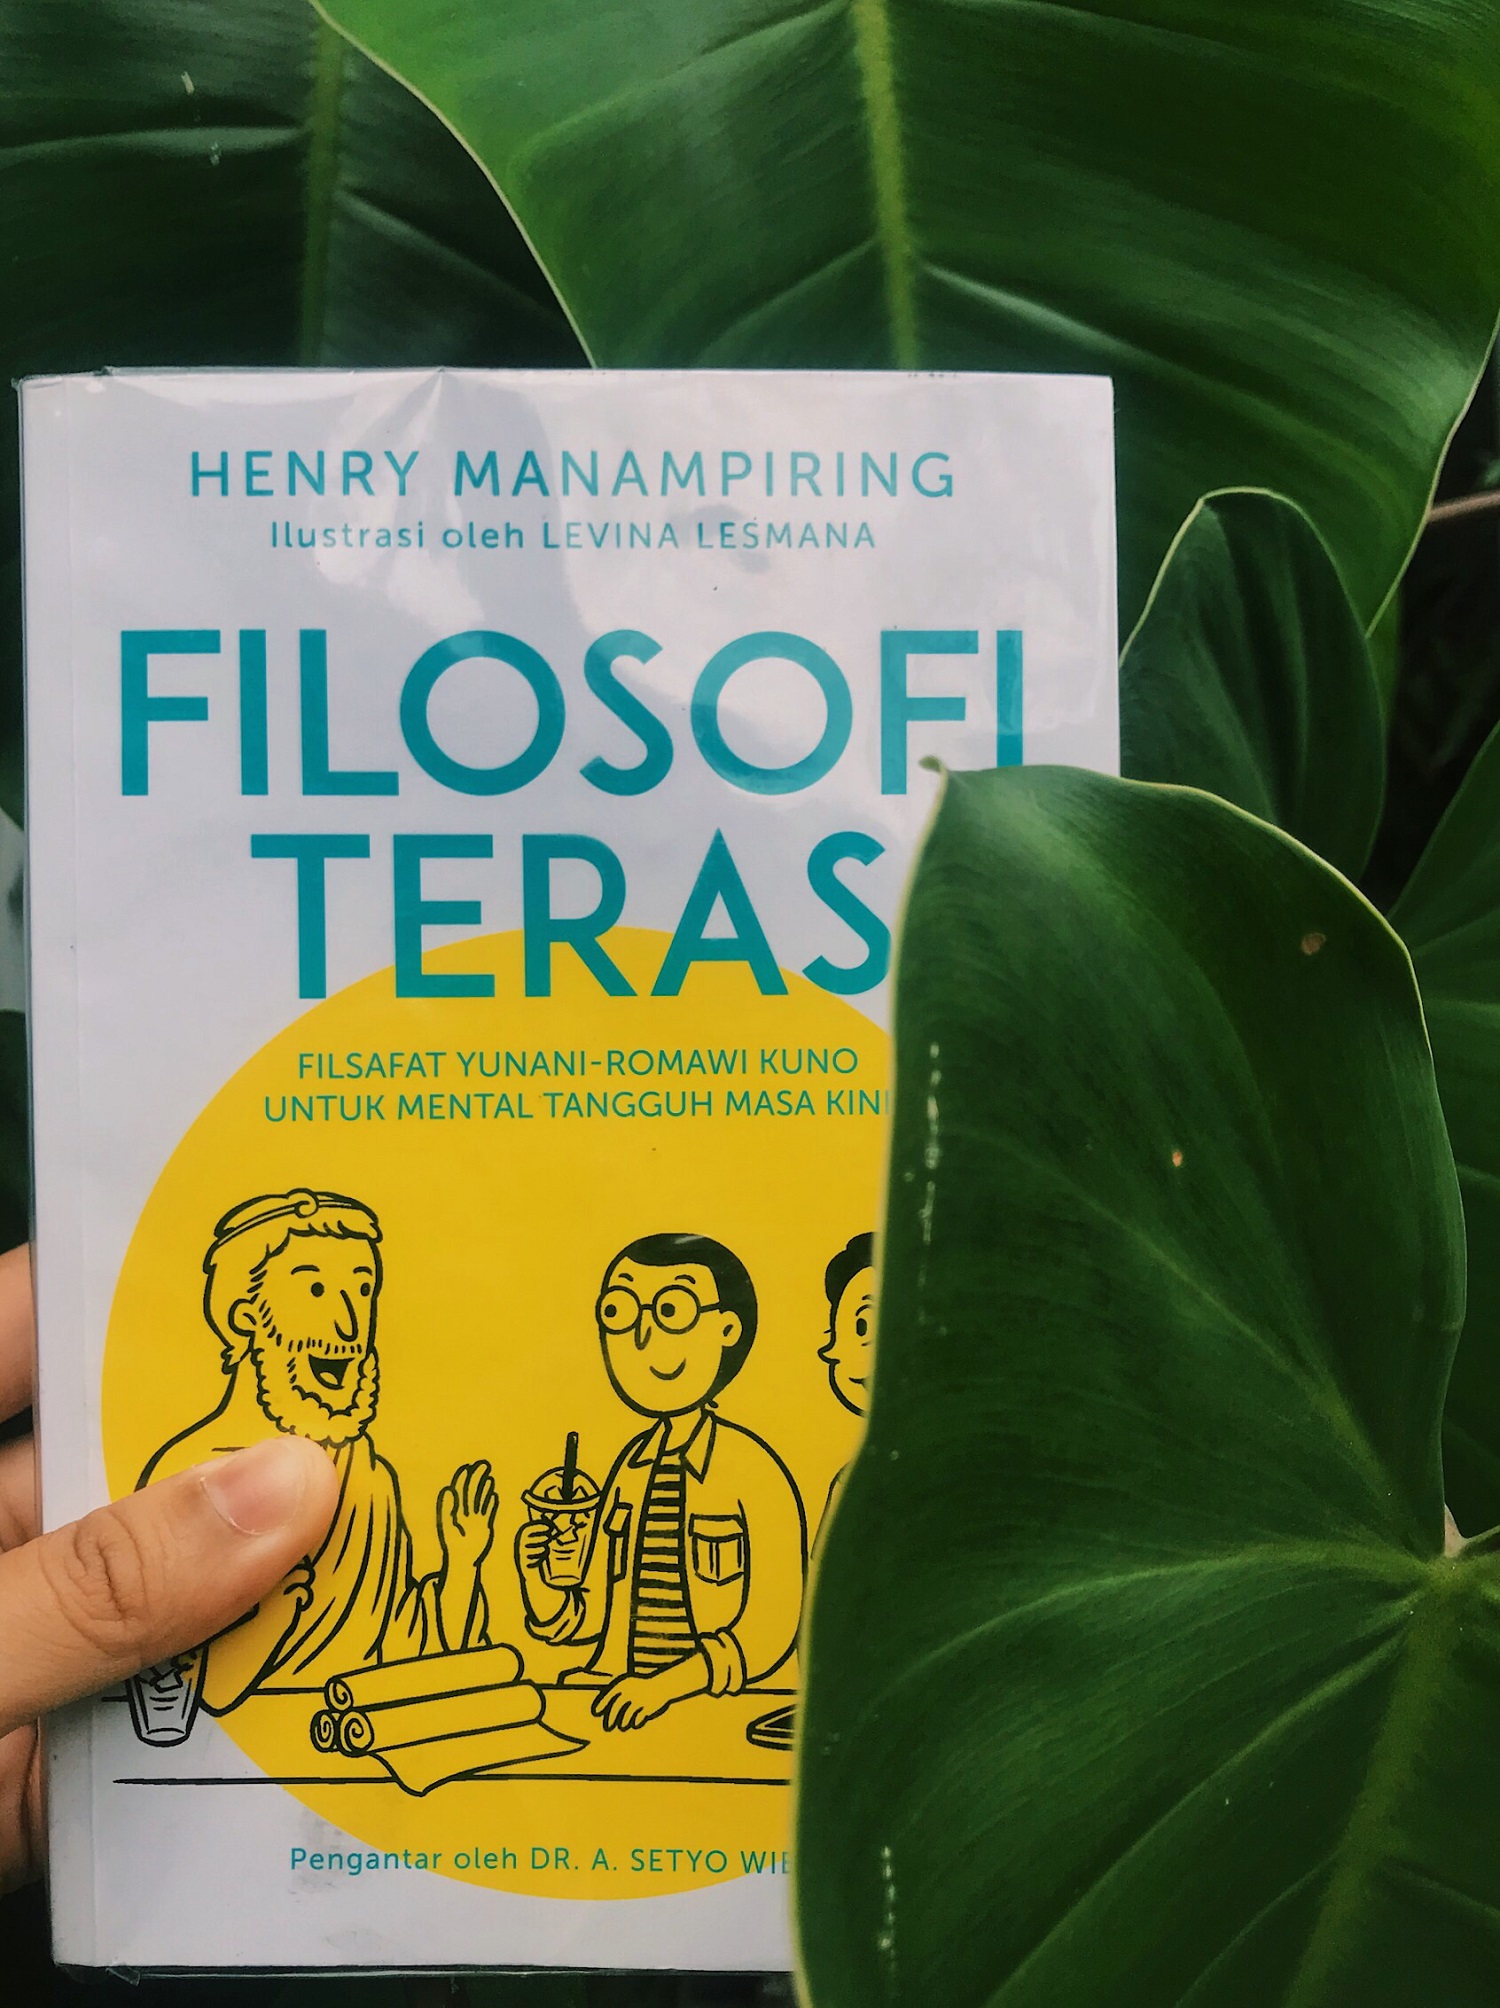 The cover of Henry Manampiring's Filosofi Teras.